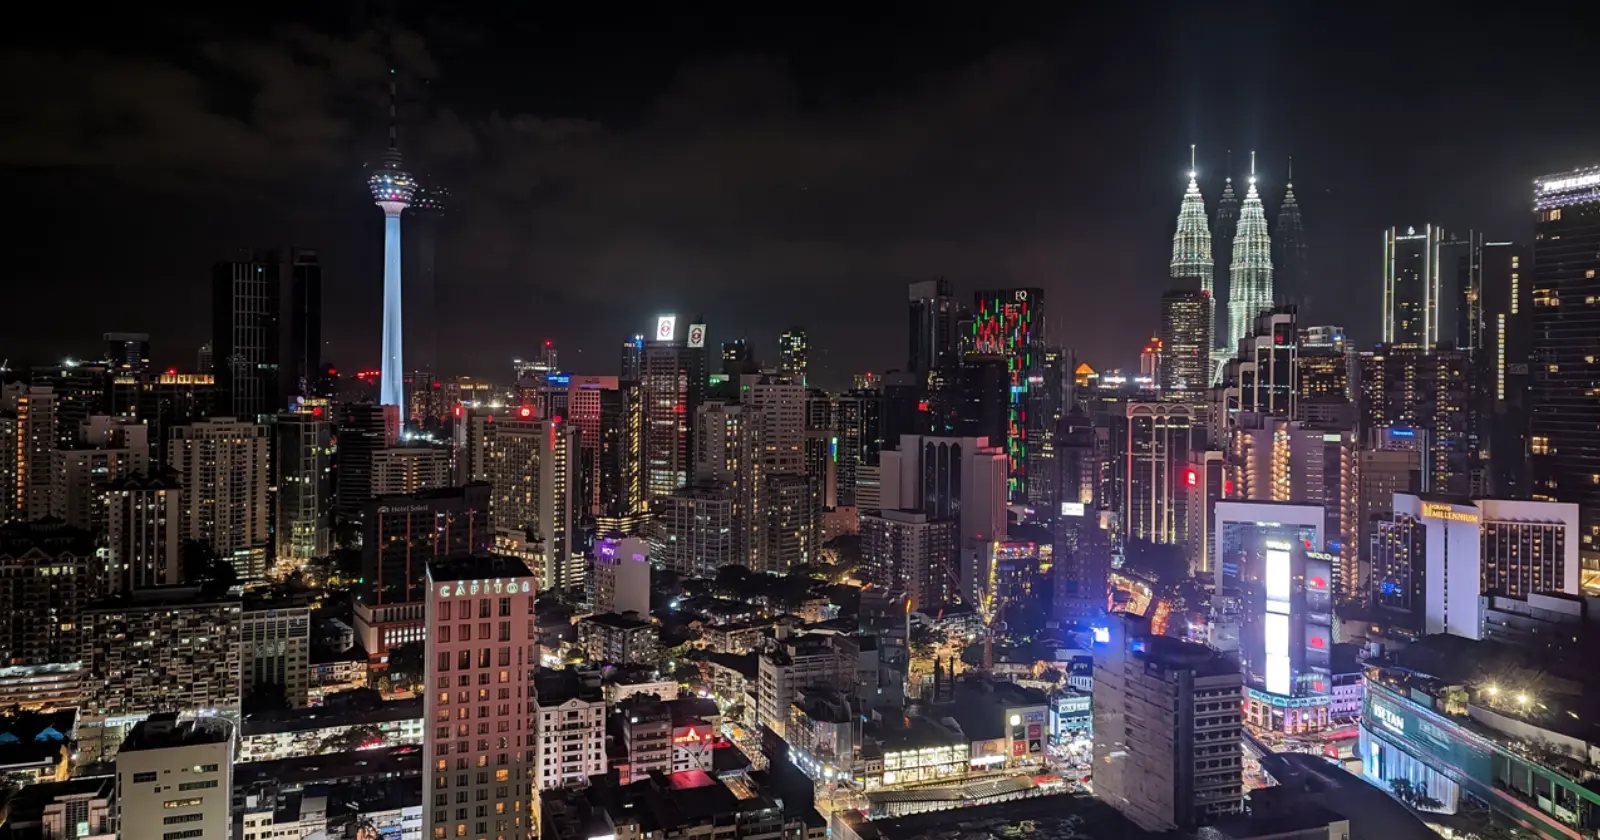 Cities after dark: Handpicked night life pictures captured on Google Pixel phones